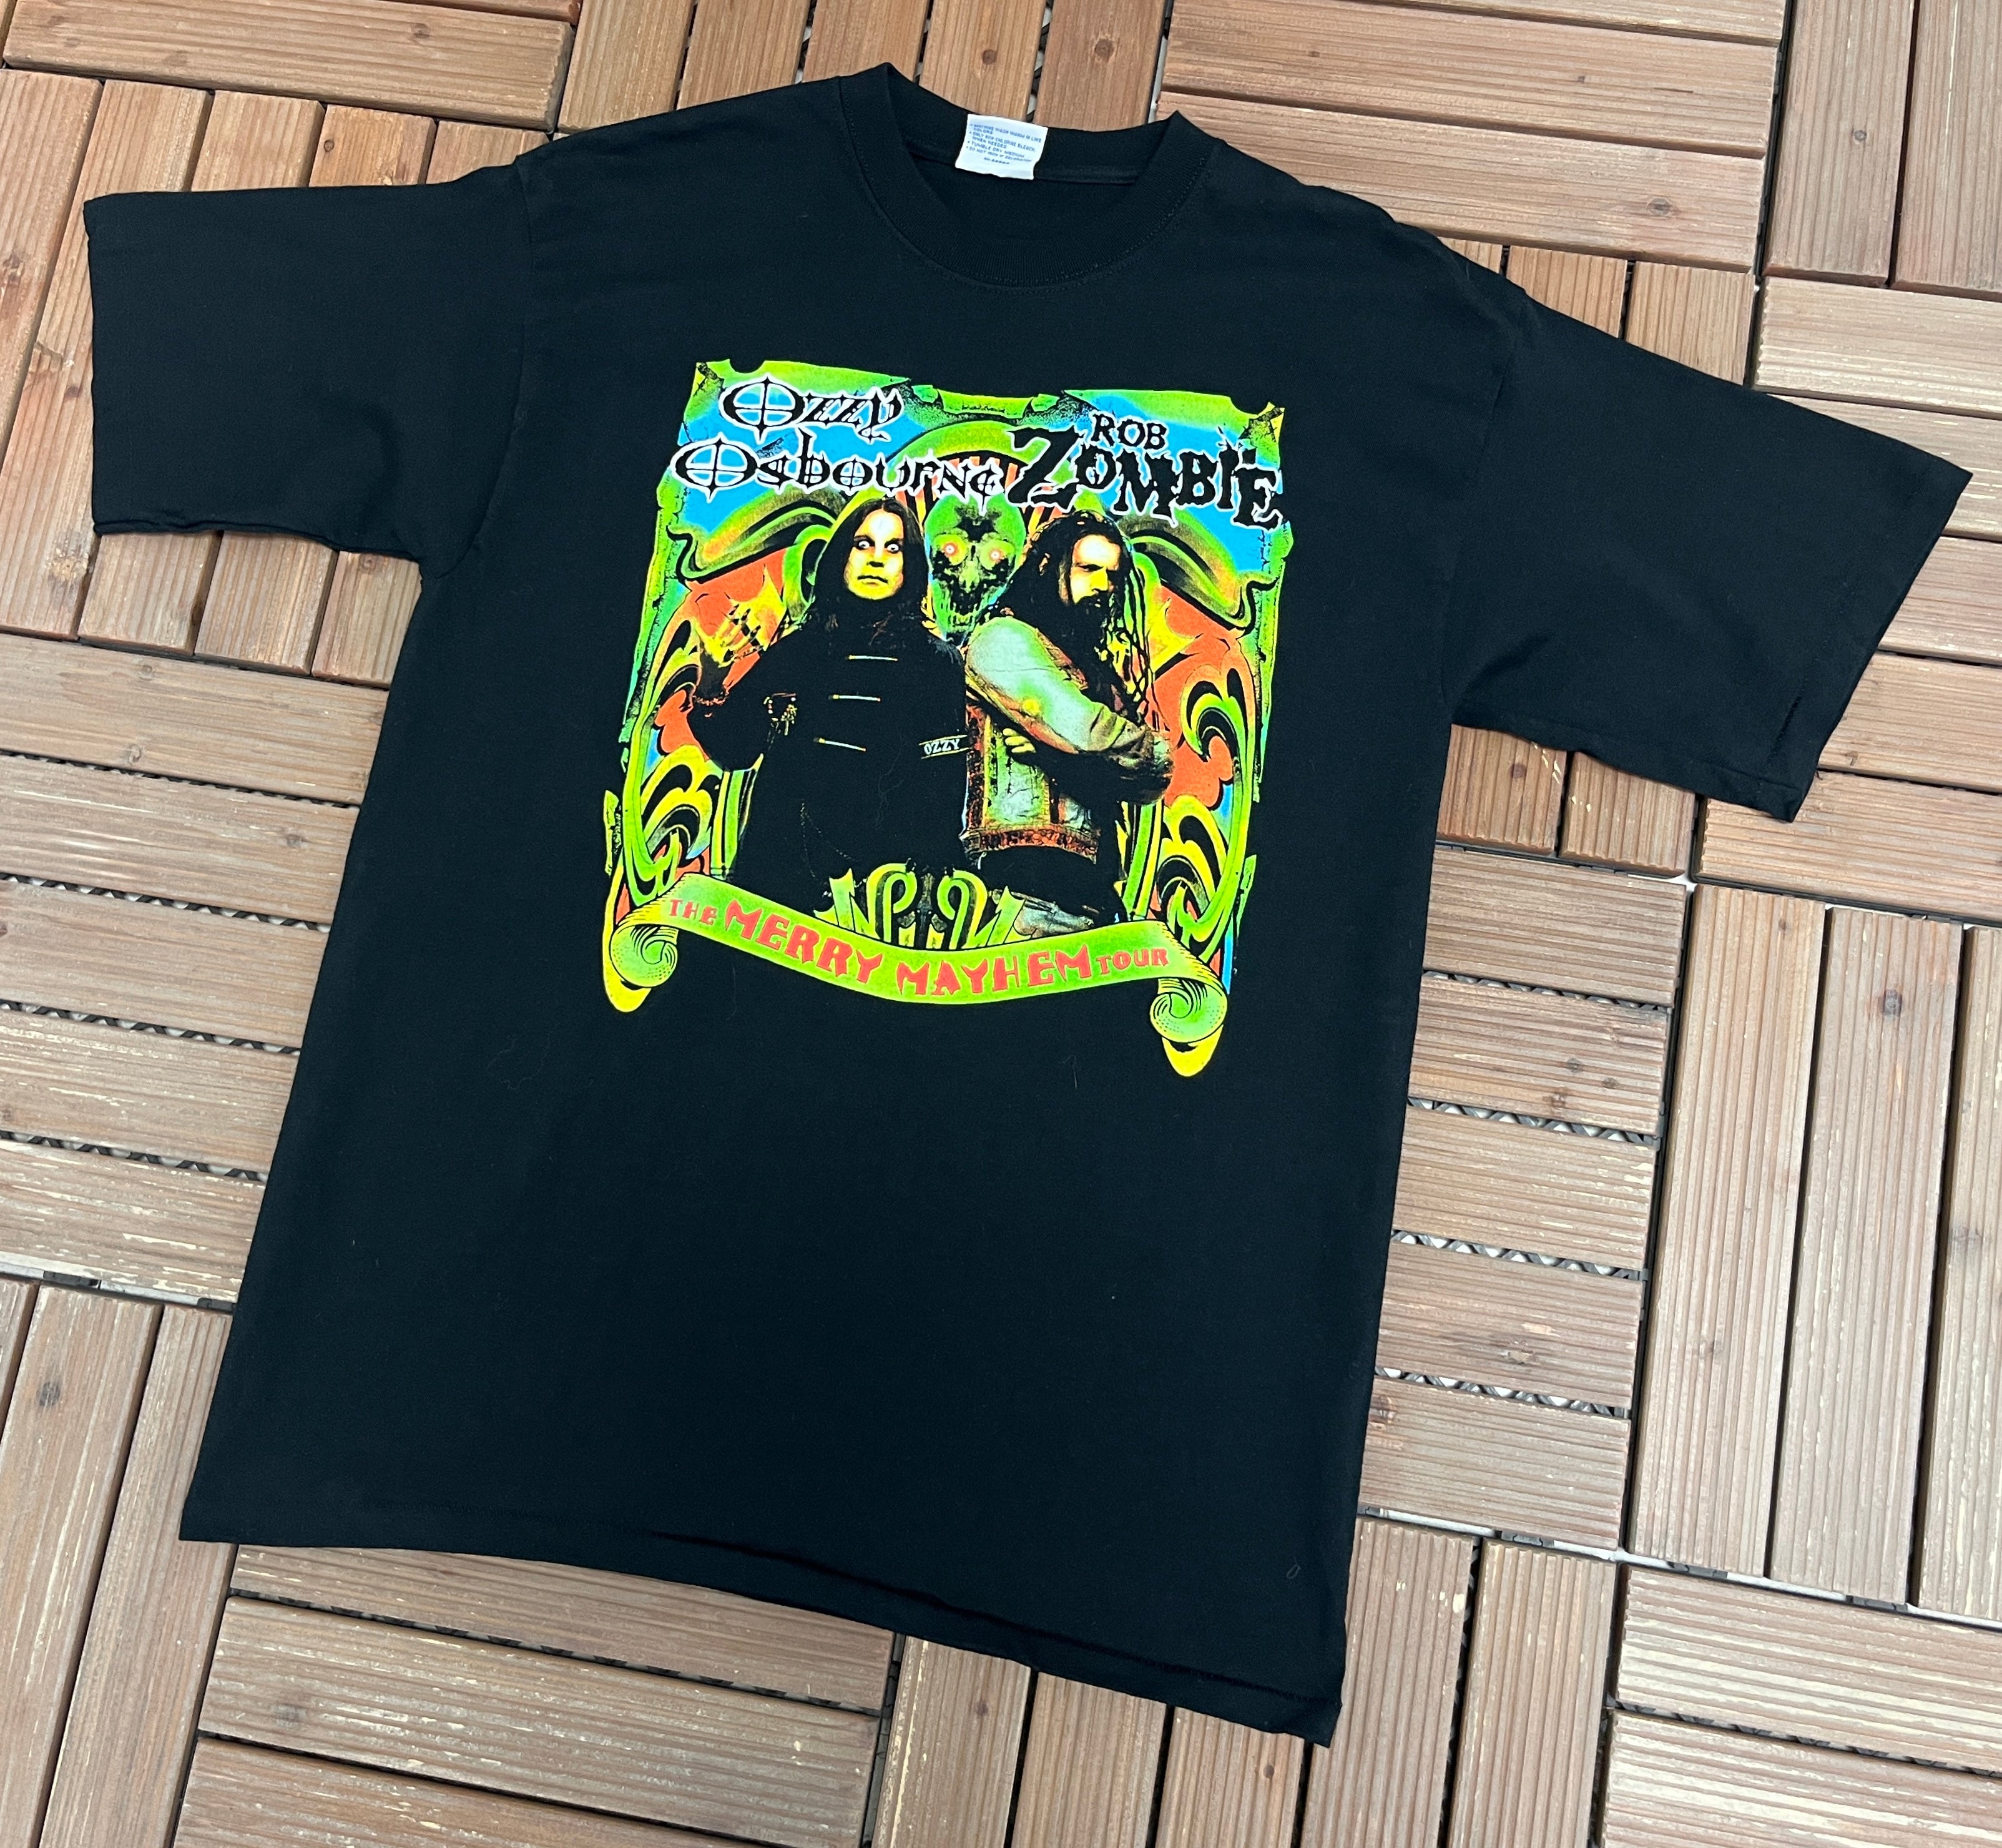 Ozzy Osbourne & Rob Zombie The Merry Mayhem Tour 2001 Graphic Tee